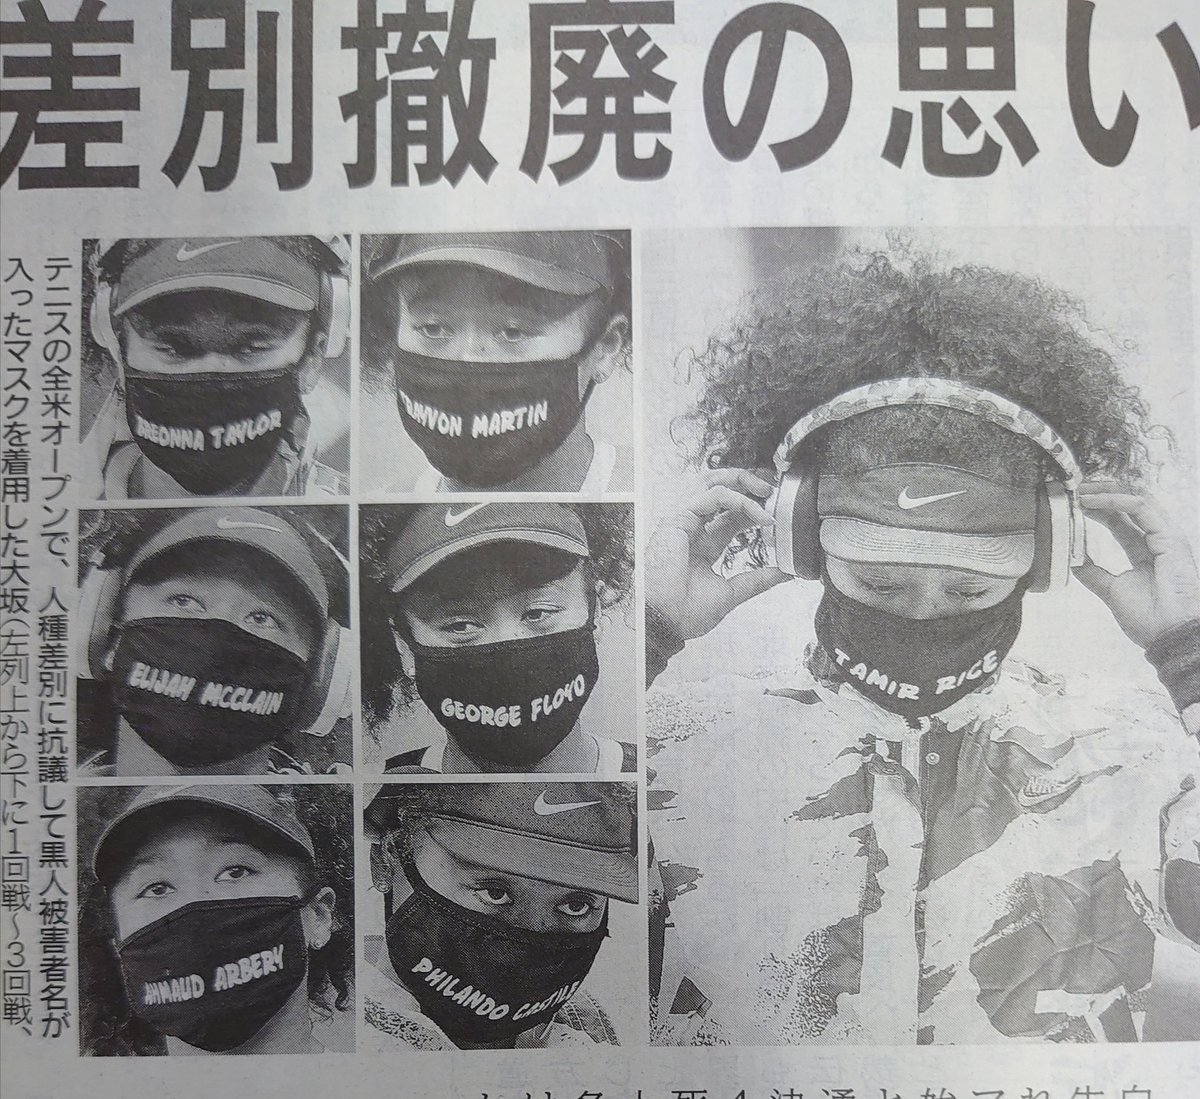 @omkitaneezooo3 まさかオリンピックで日本代表とかはないでしょうね🤨
オリンピック会場でマスク姿するかもしれないので、今の彼女ではダメですね❗